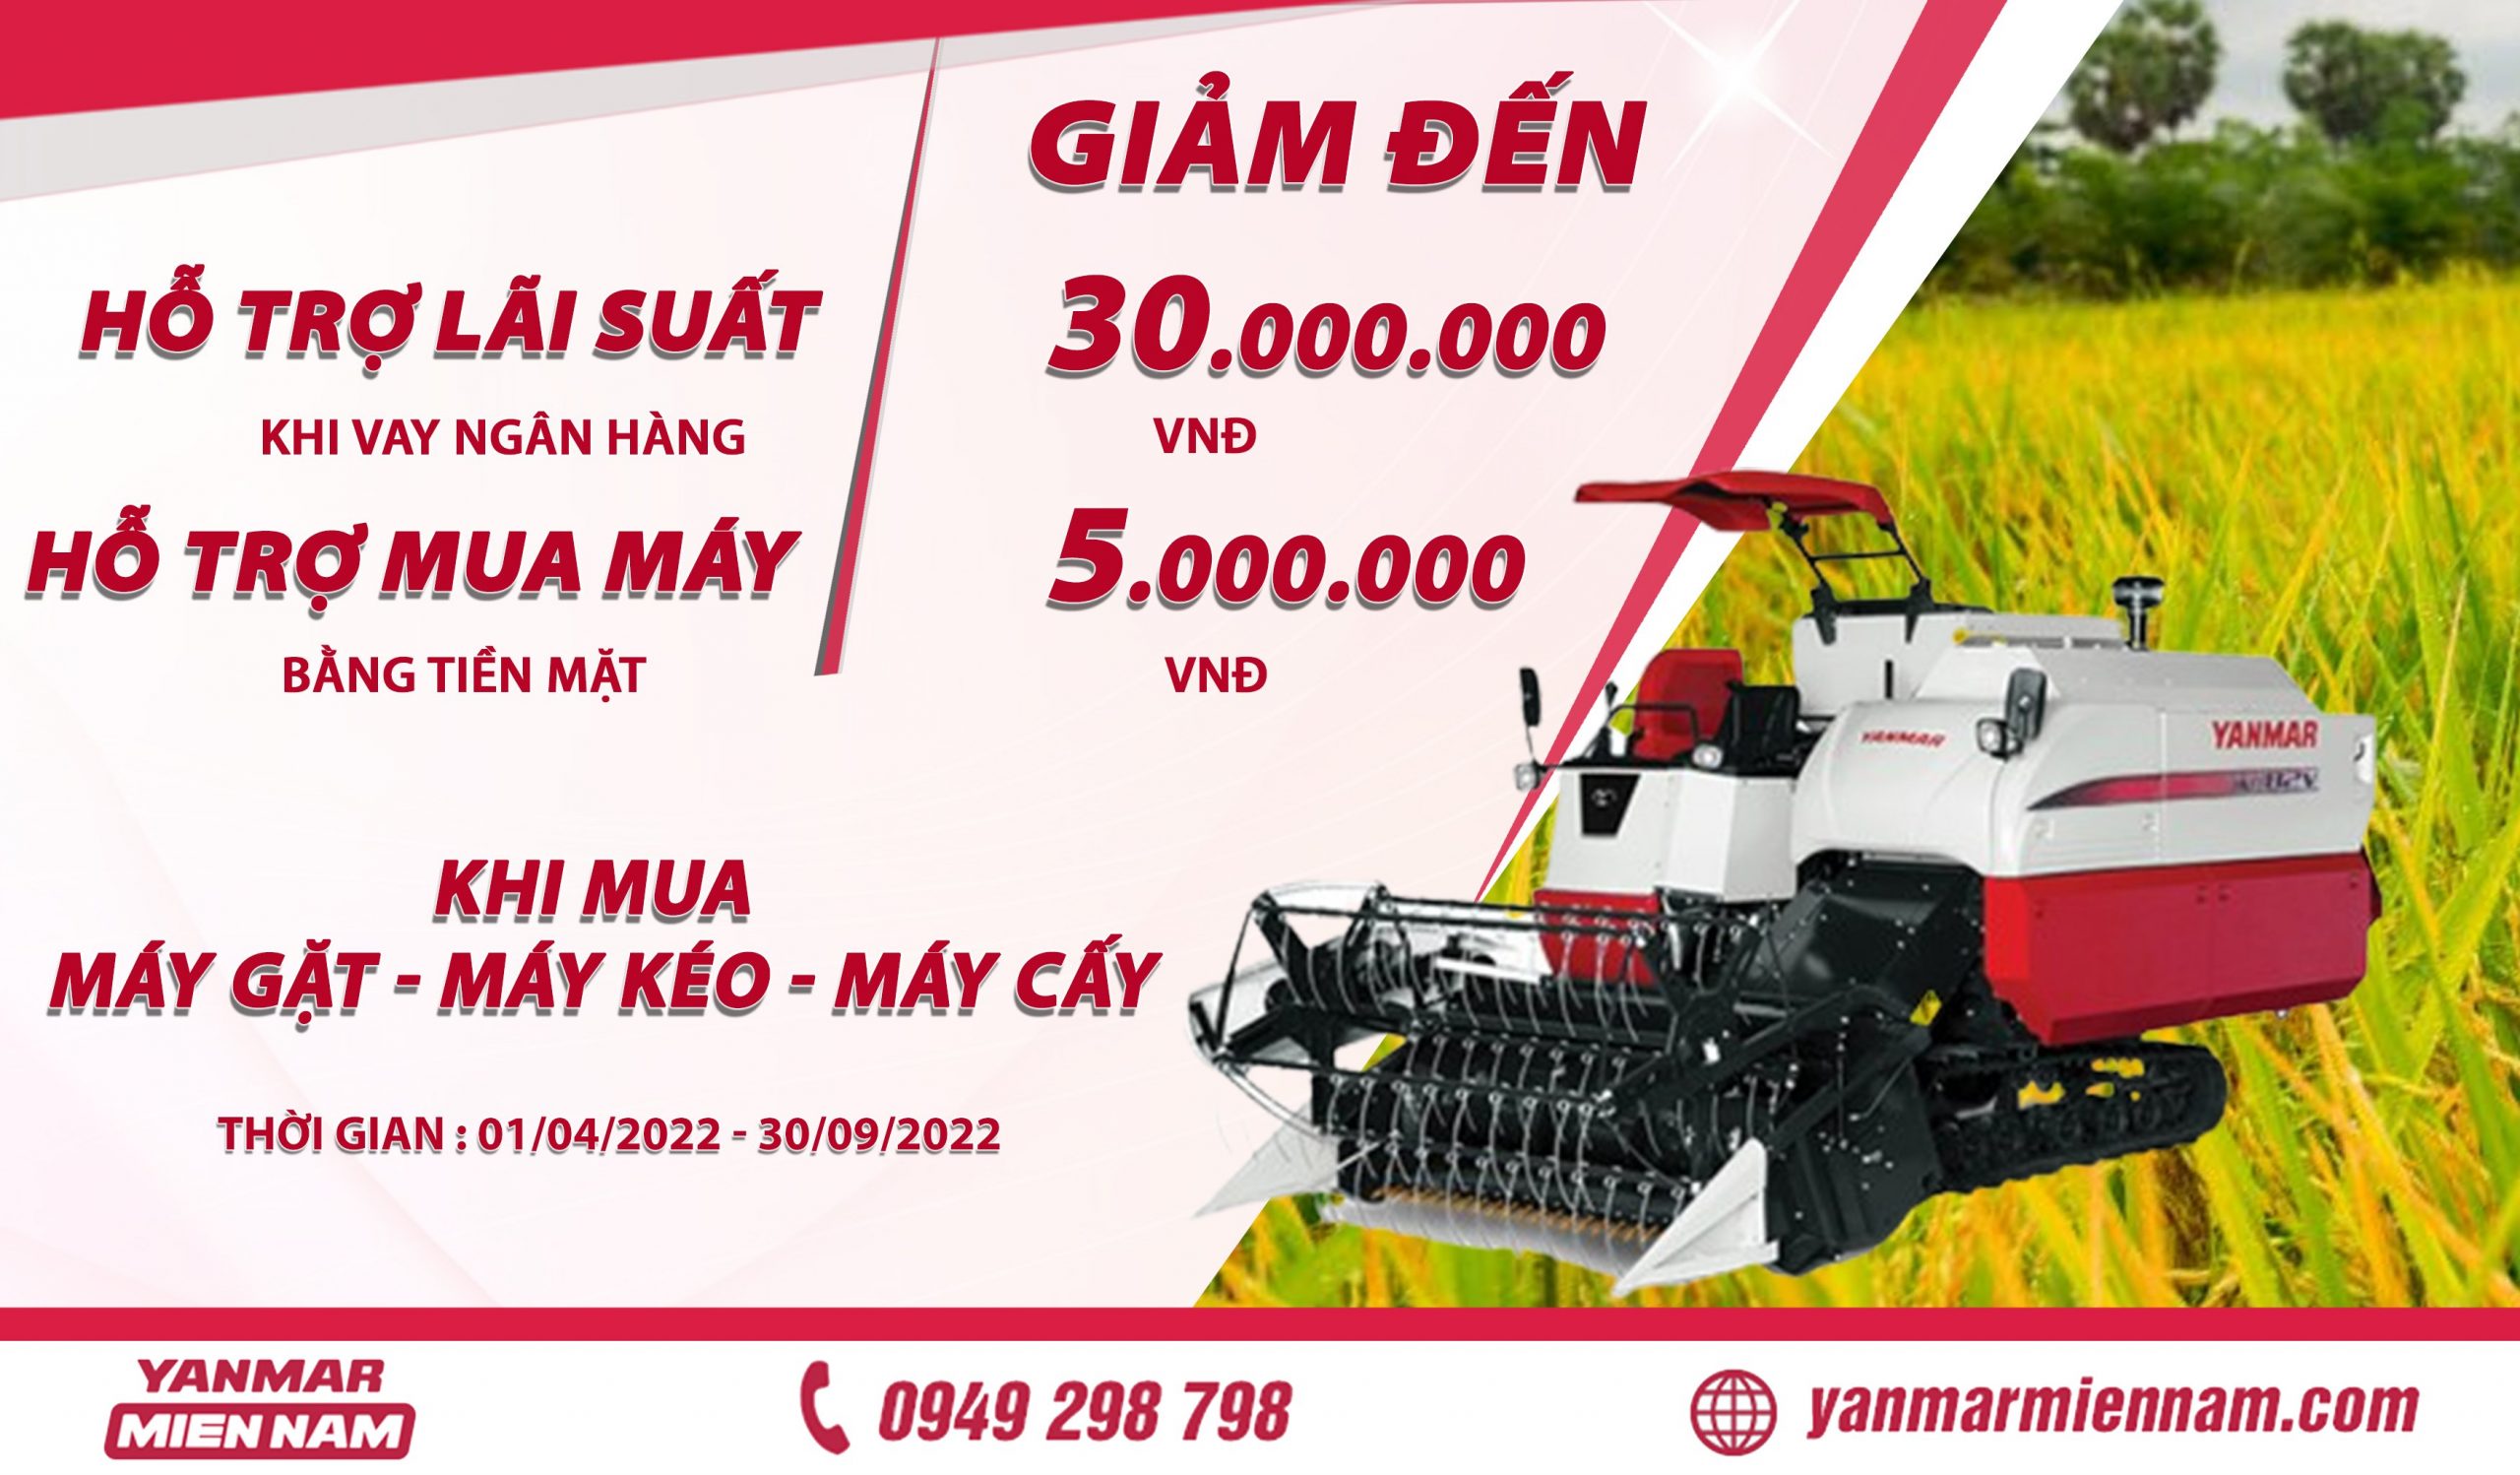 Yanmar Miền Nam - cung cấp các loại máy nông nghiệp, máy cày, máy cấy, máy gặt đập 